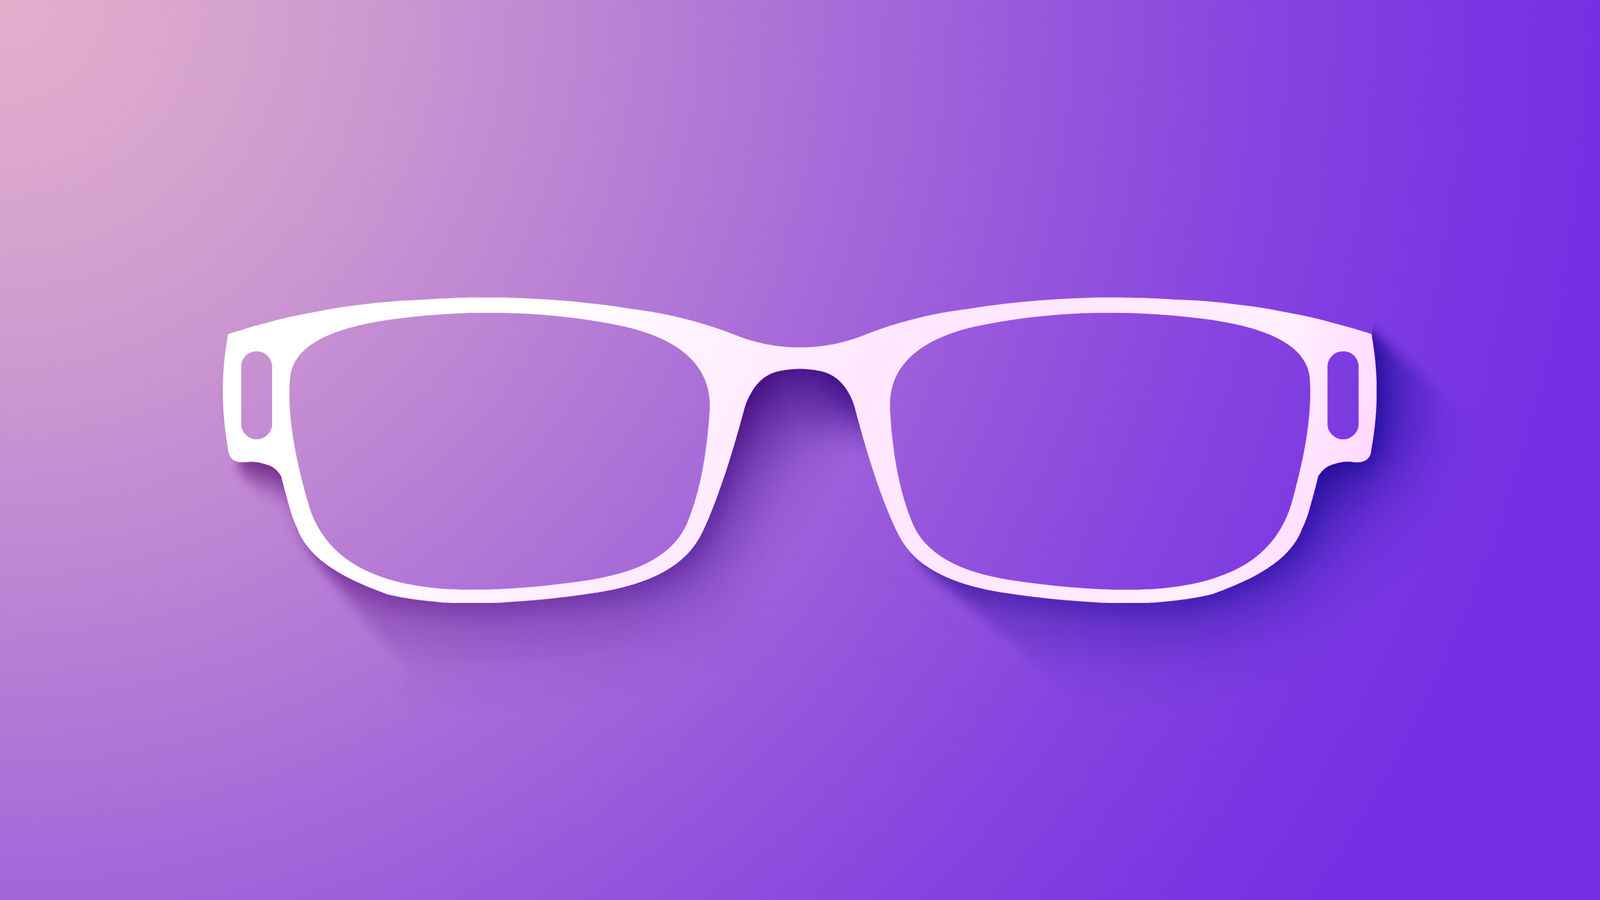 苹果的增强现实眼镜设备至少还需要四年时间才能上市？-Applehub-心动论坛